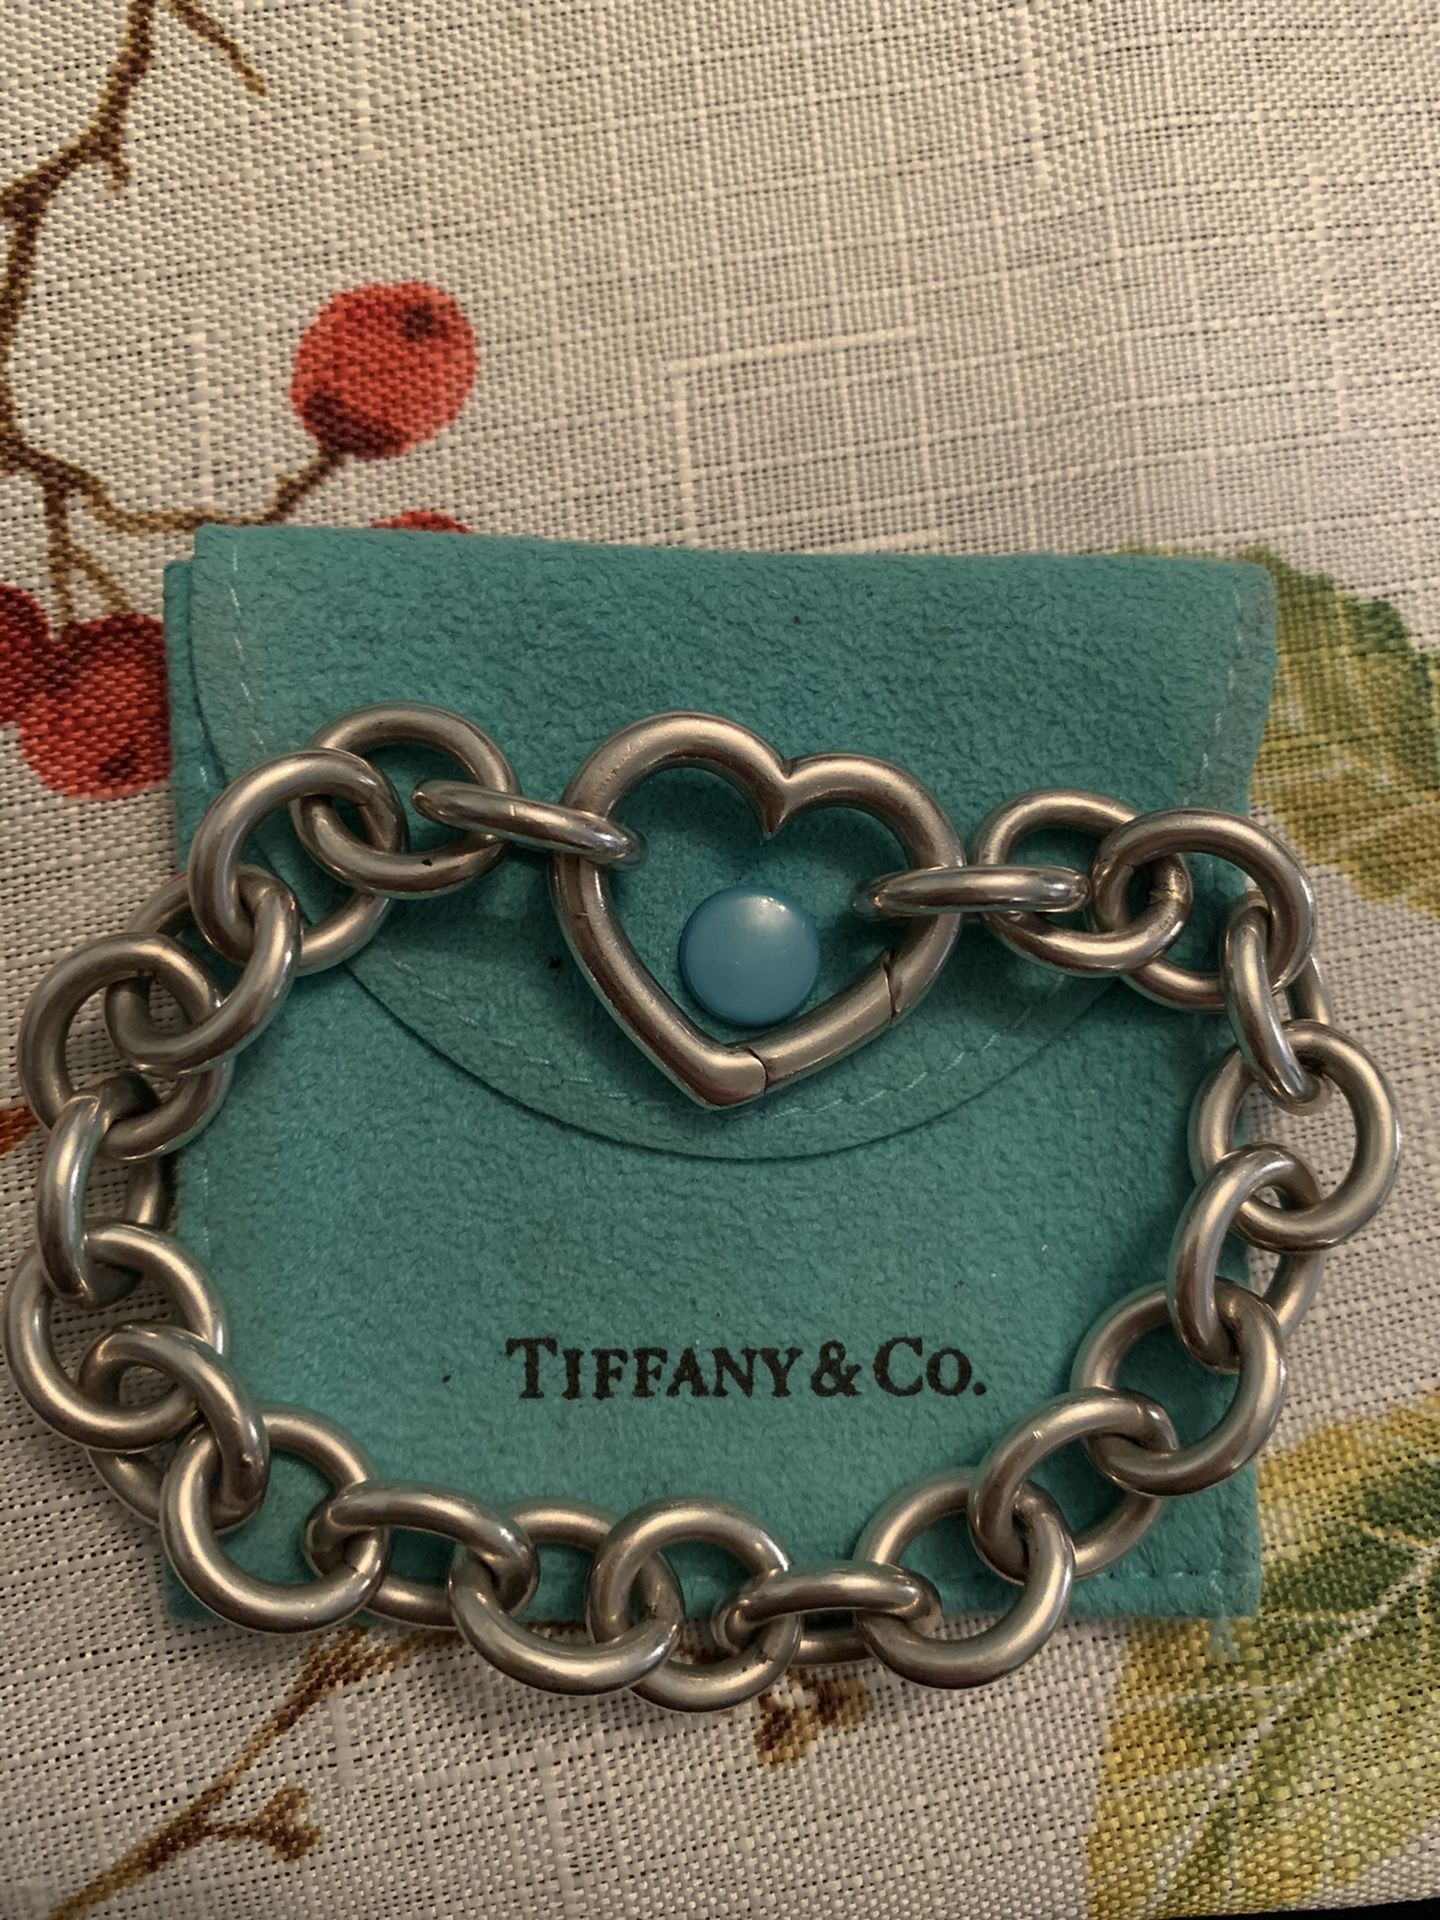 Tiffany & Co. Open Heart Clasp 925 Sterling Silver Oval Link Bracelet